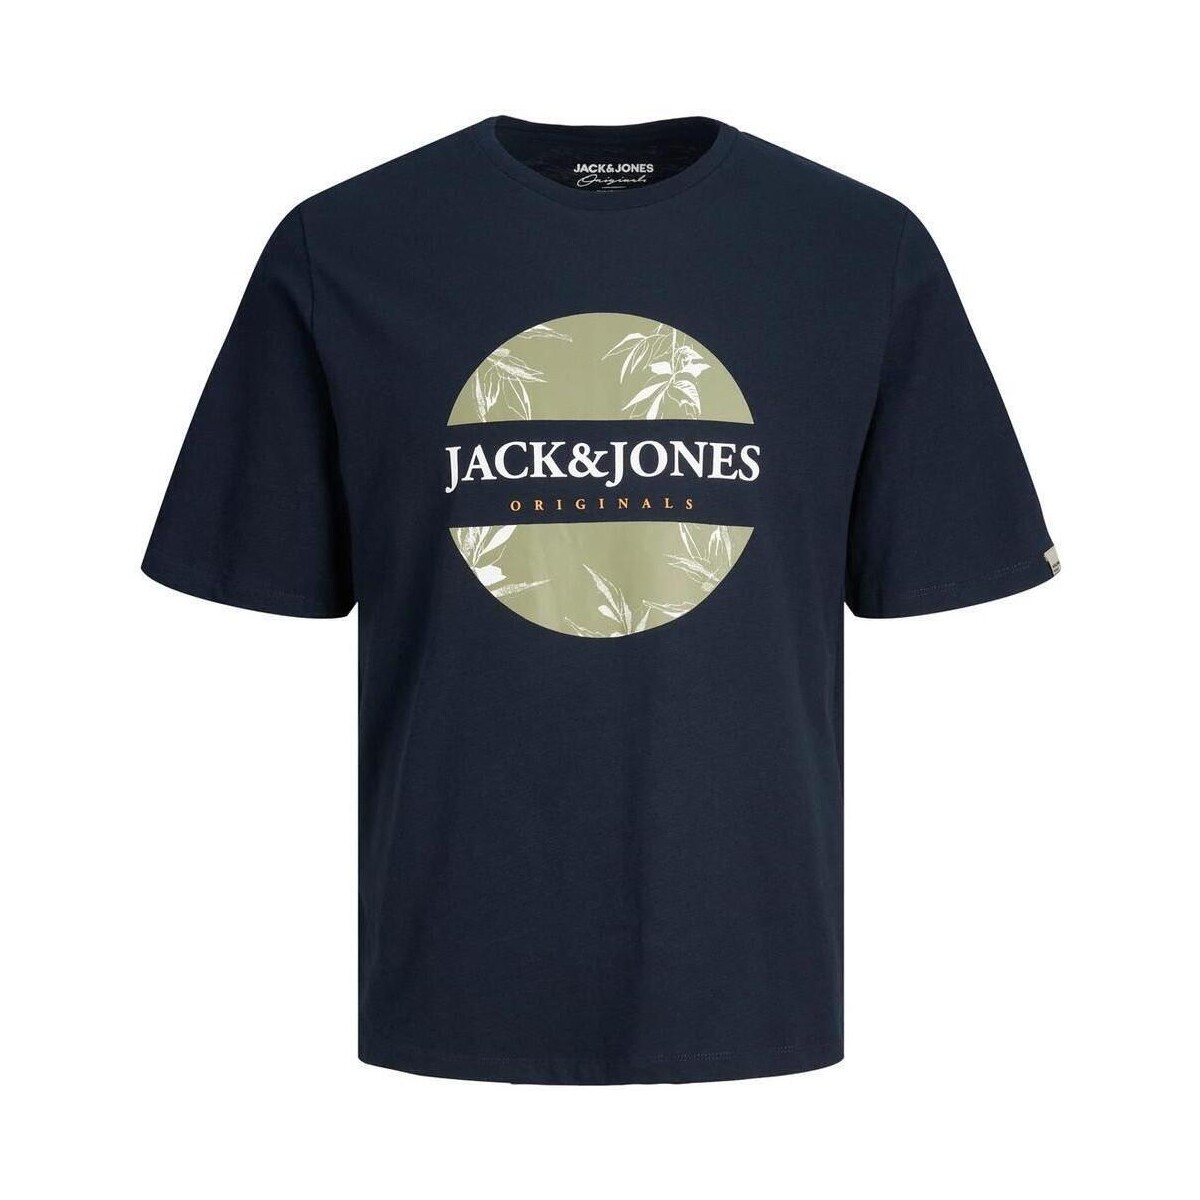 textil Herre T-shirts m. korte ærmer Jack & Jones  Blå